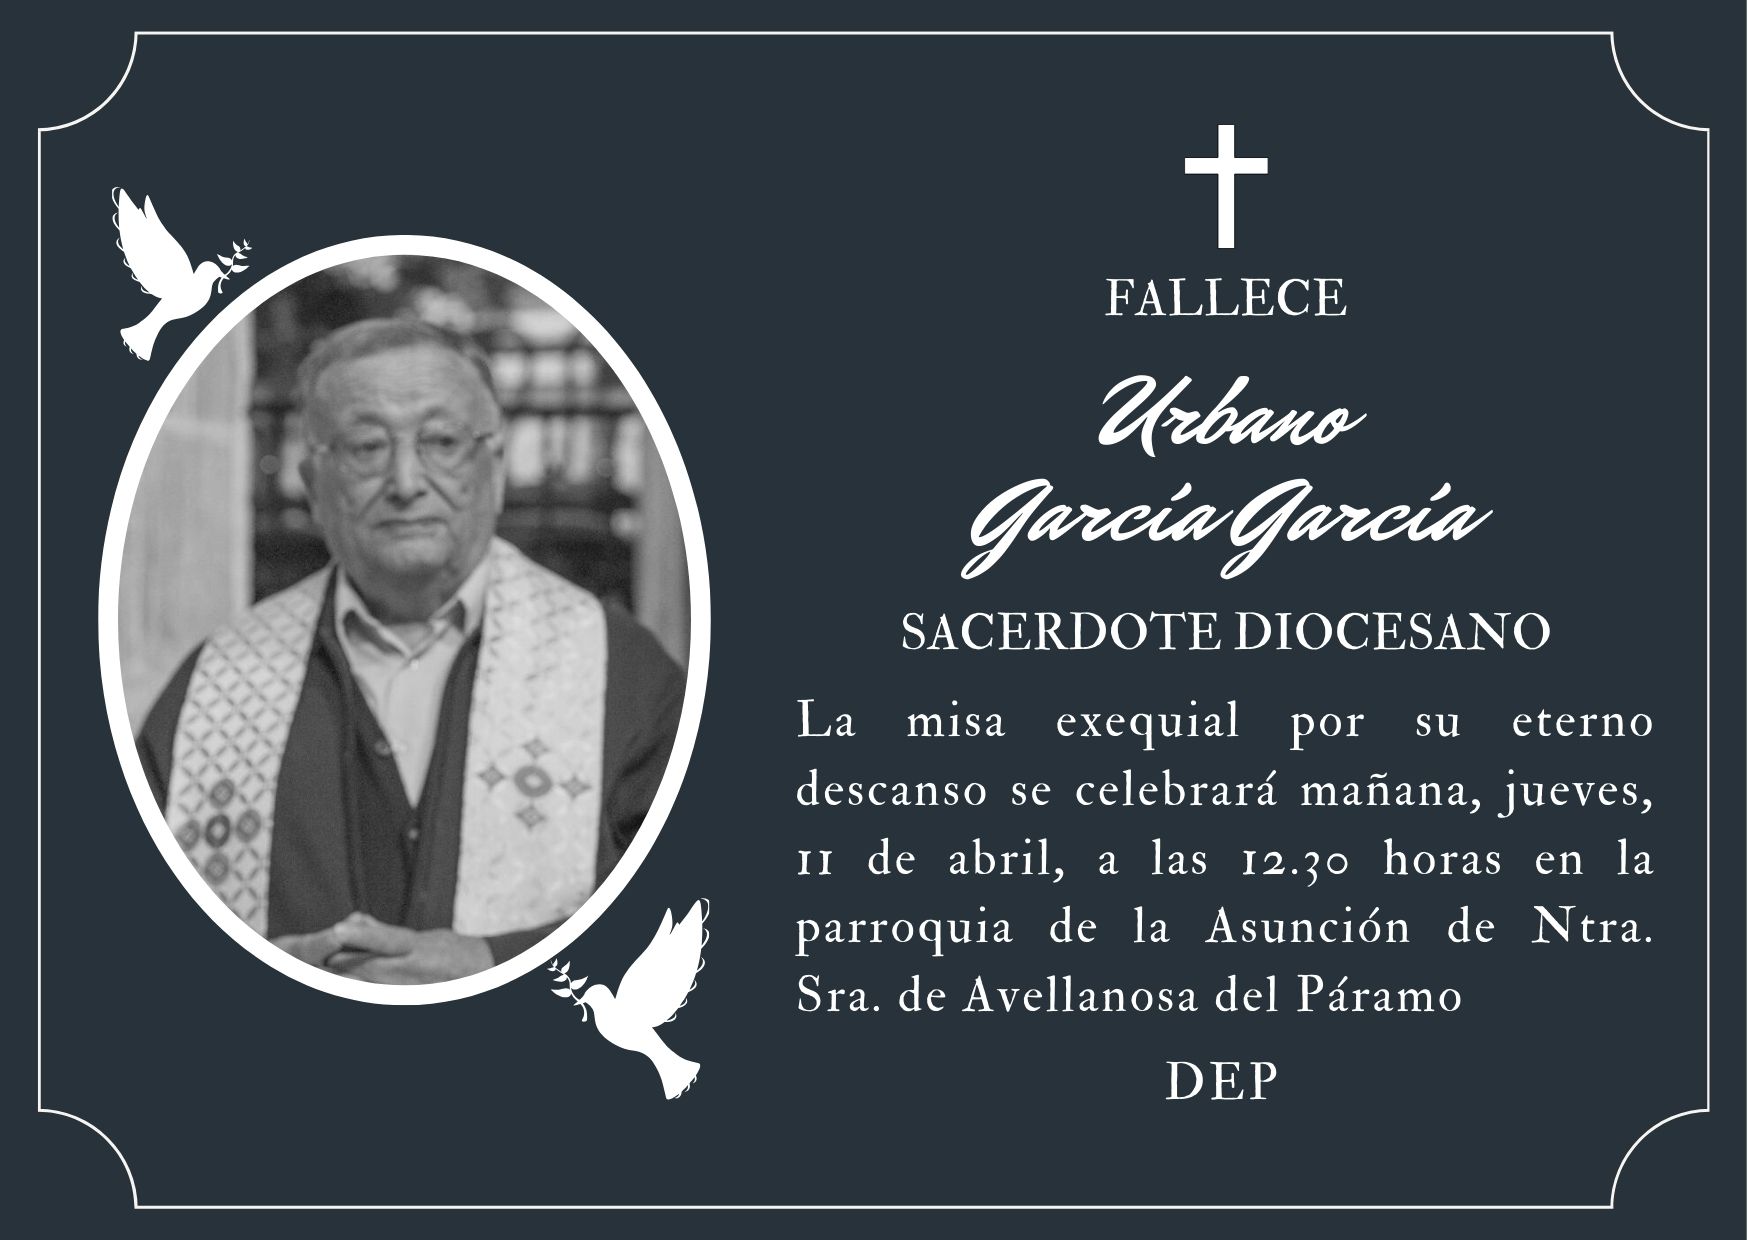 Fallece el sacerdote Urbano García García